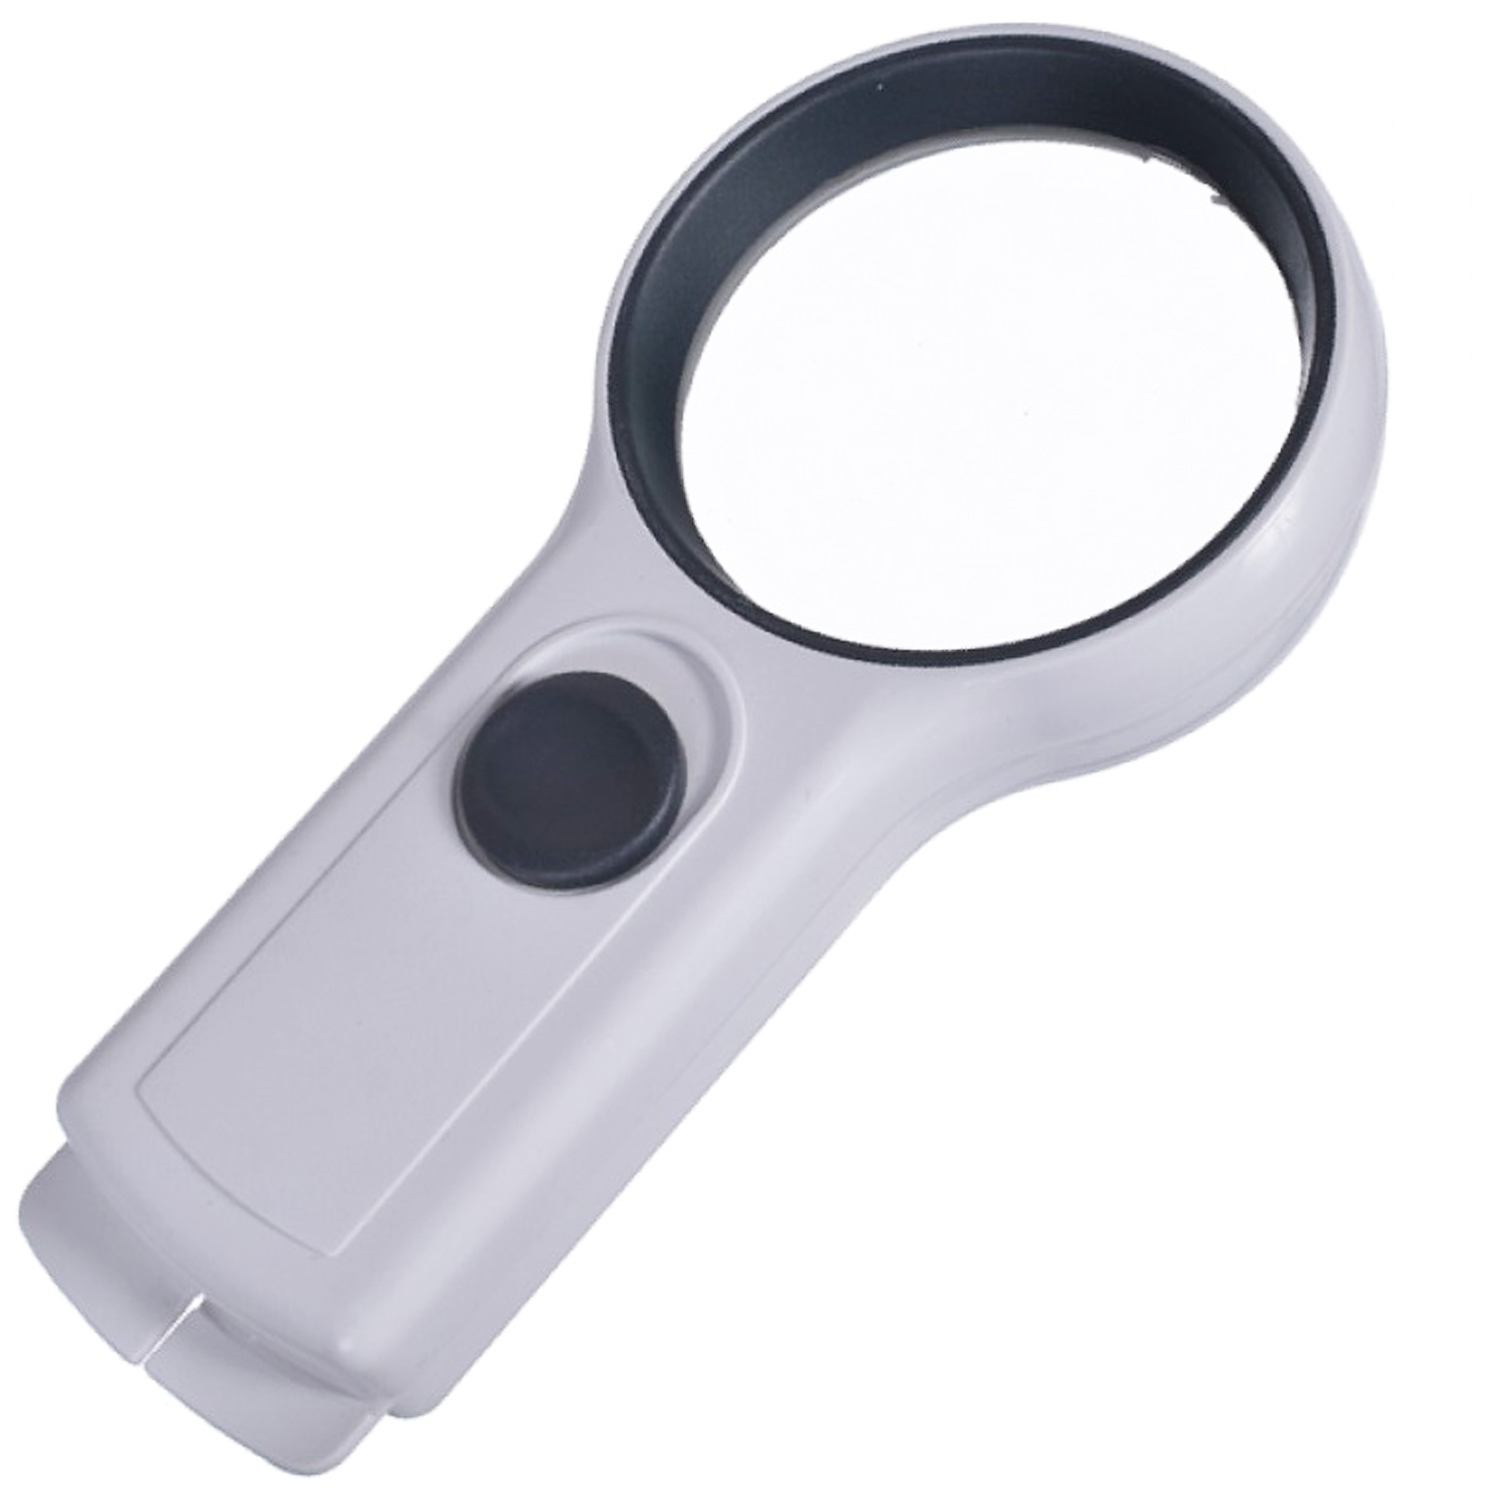 Лупа ручная Magnifier MG82017-L с LED подсветкой, фото